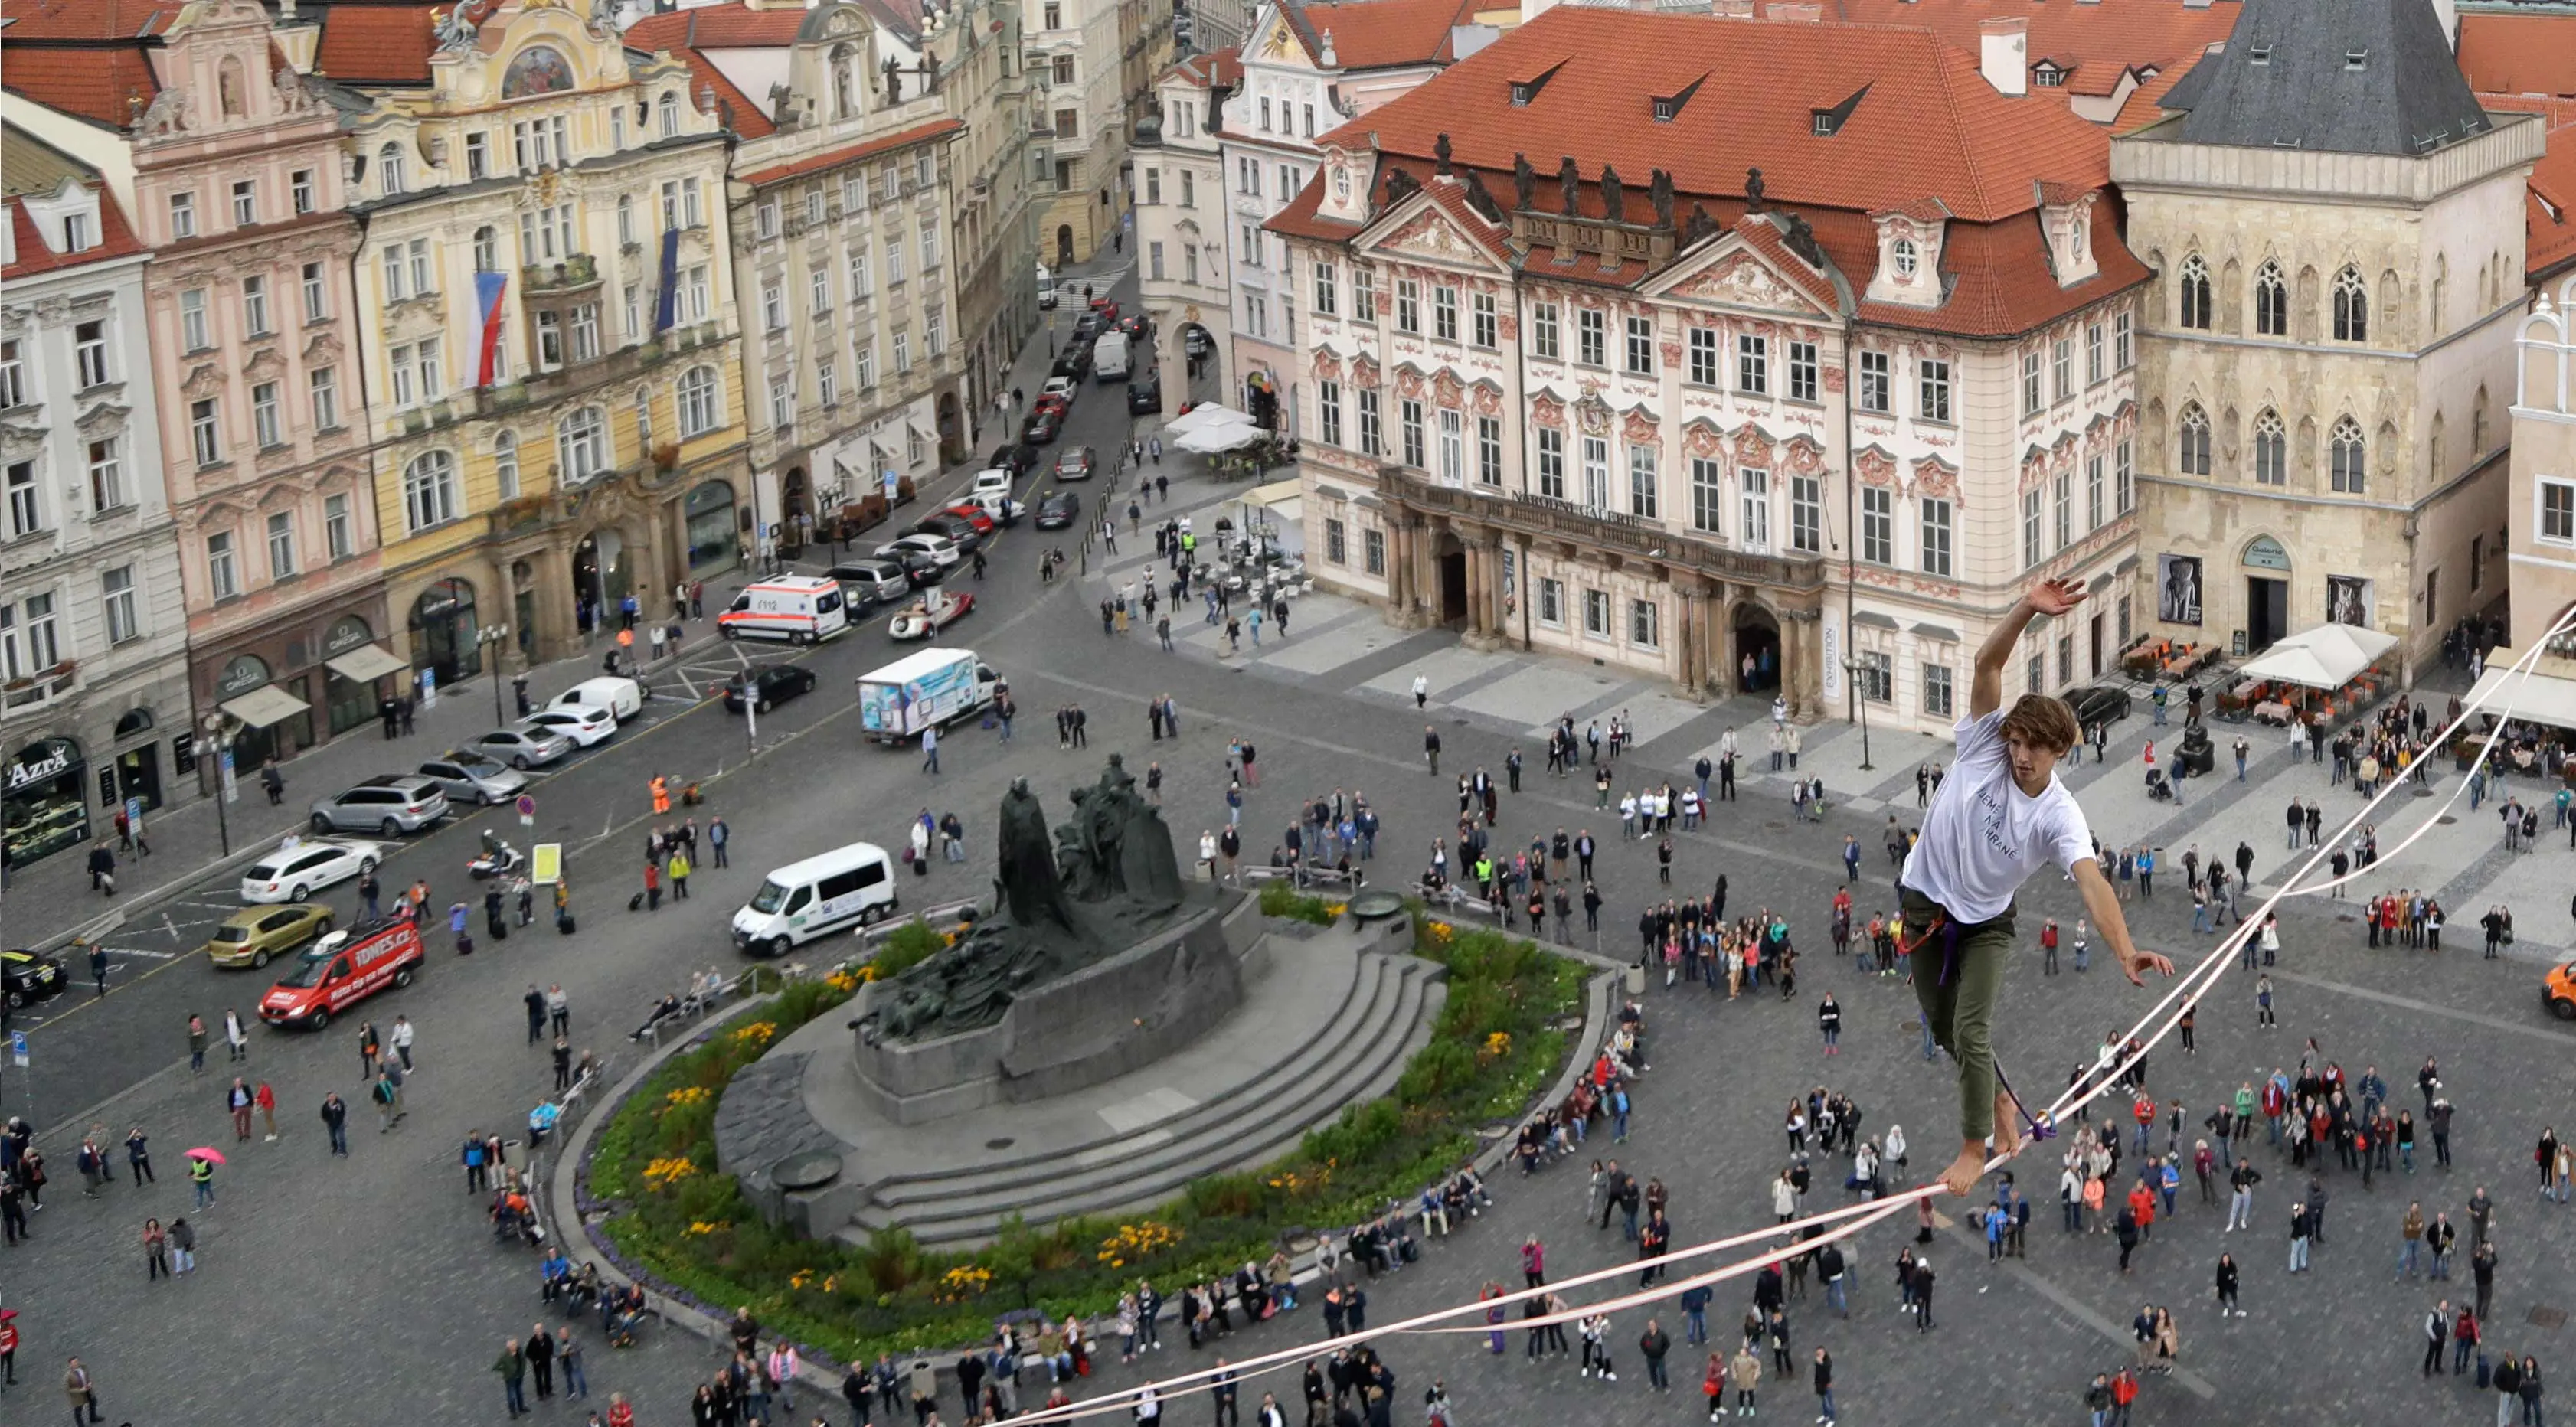 Atlet menyeimbangkan tubuhnya saat berjalan di atas tali yang membentang di Old Town Square, Praha, Republik Ceko, (25/9). Pertunjukan tersebut merupakan bagian kampanye dukungan orang-orang yang hidup dengan diabetes. (AP Photo/Petr David Josek)